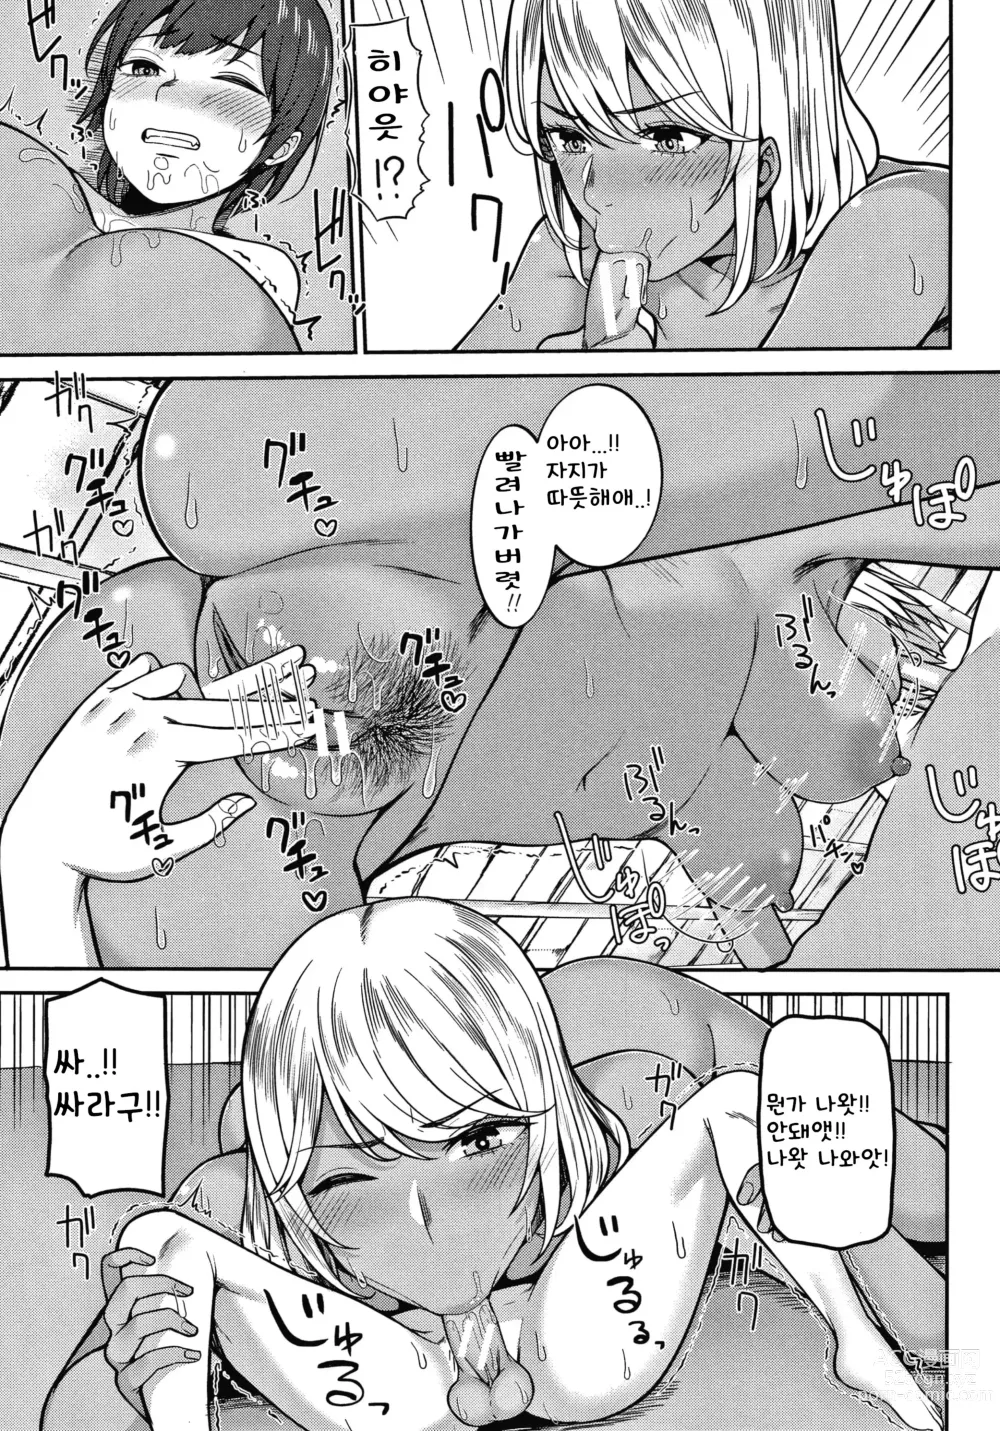 Page 11 of manga Himetsukichi Soudatsusen!